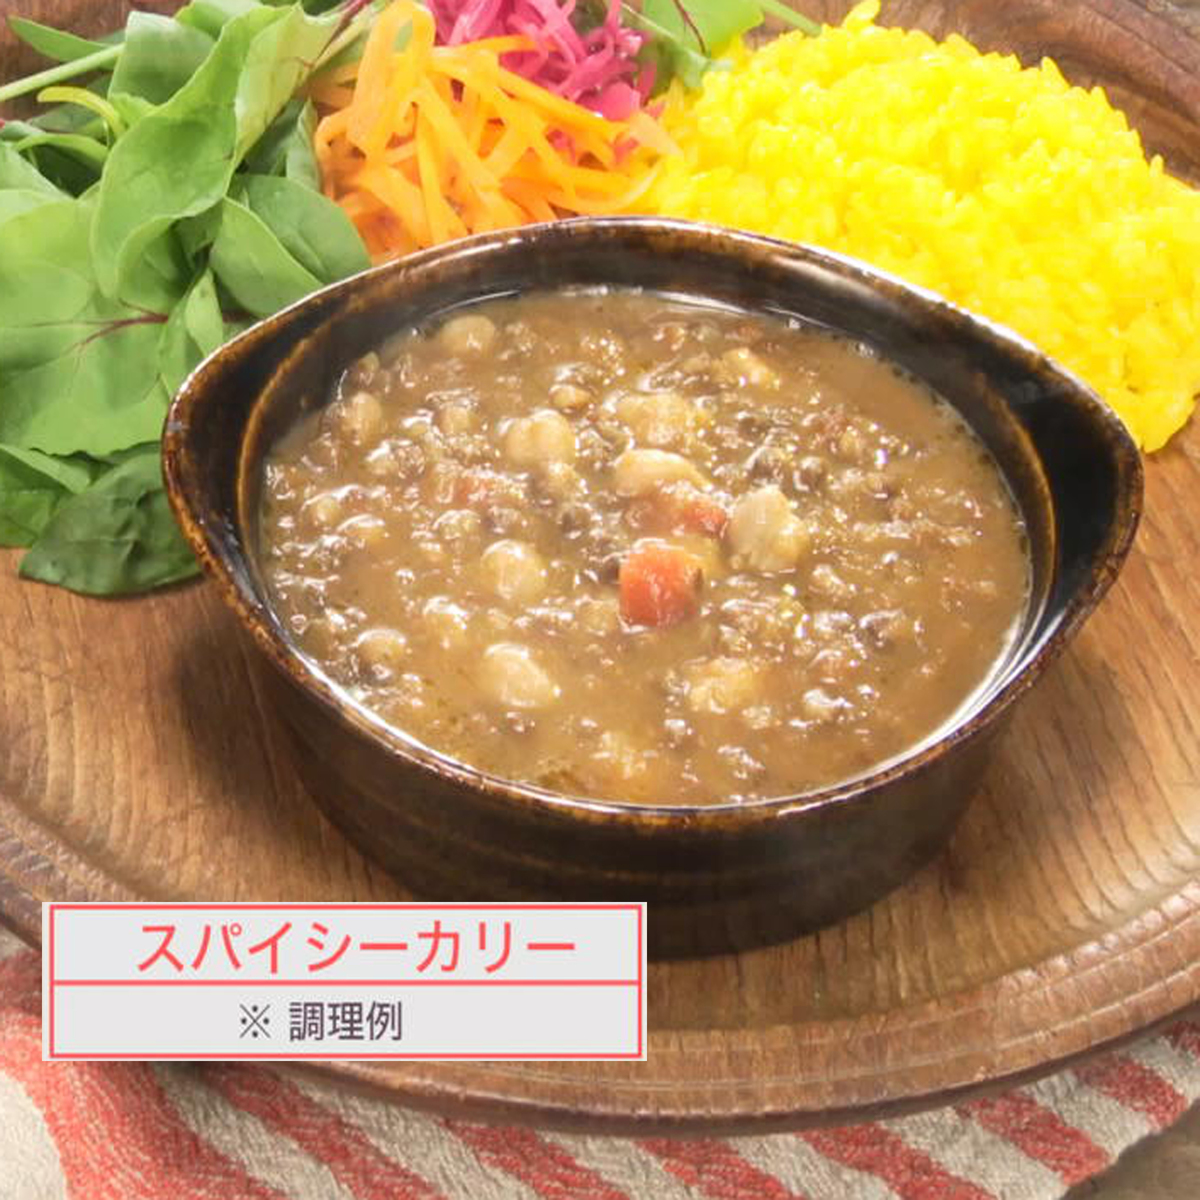 ダルーラ「オーガニック豆のスープ」10袋 ロート製薬 - QVC.jp